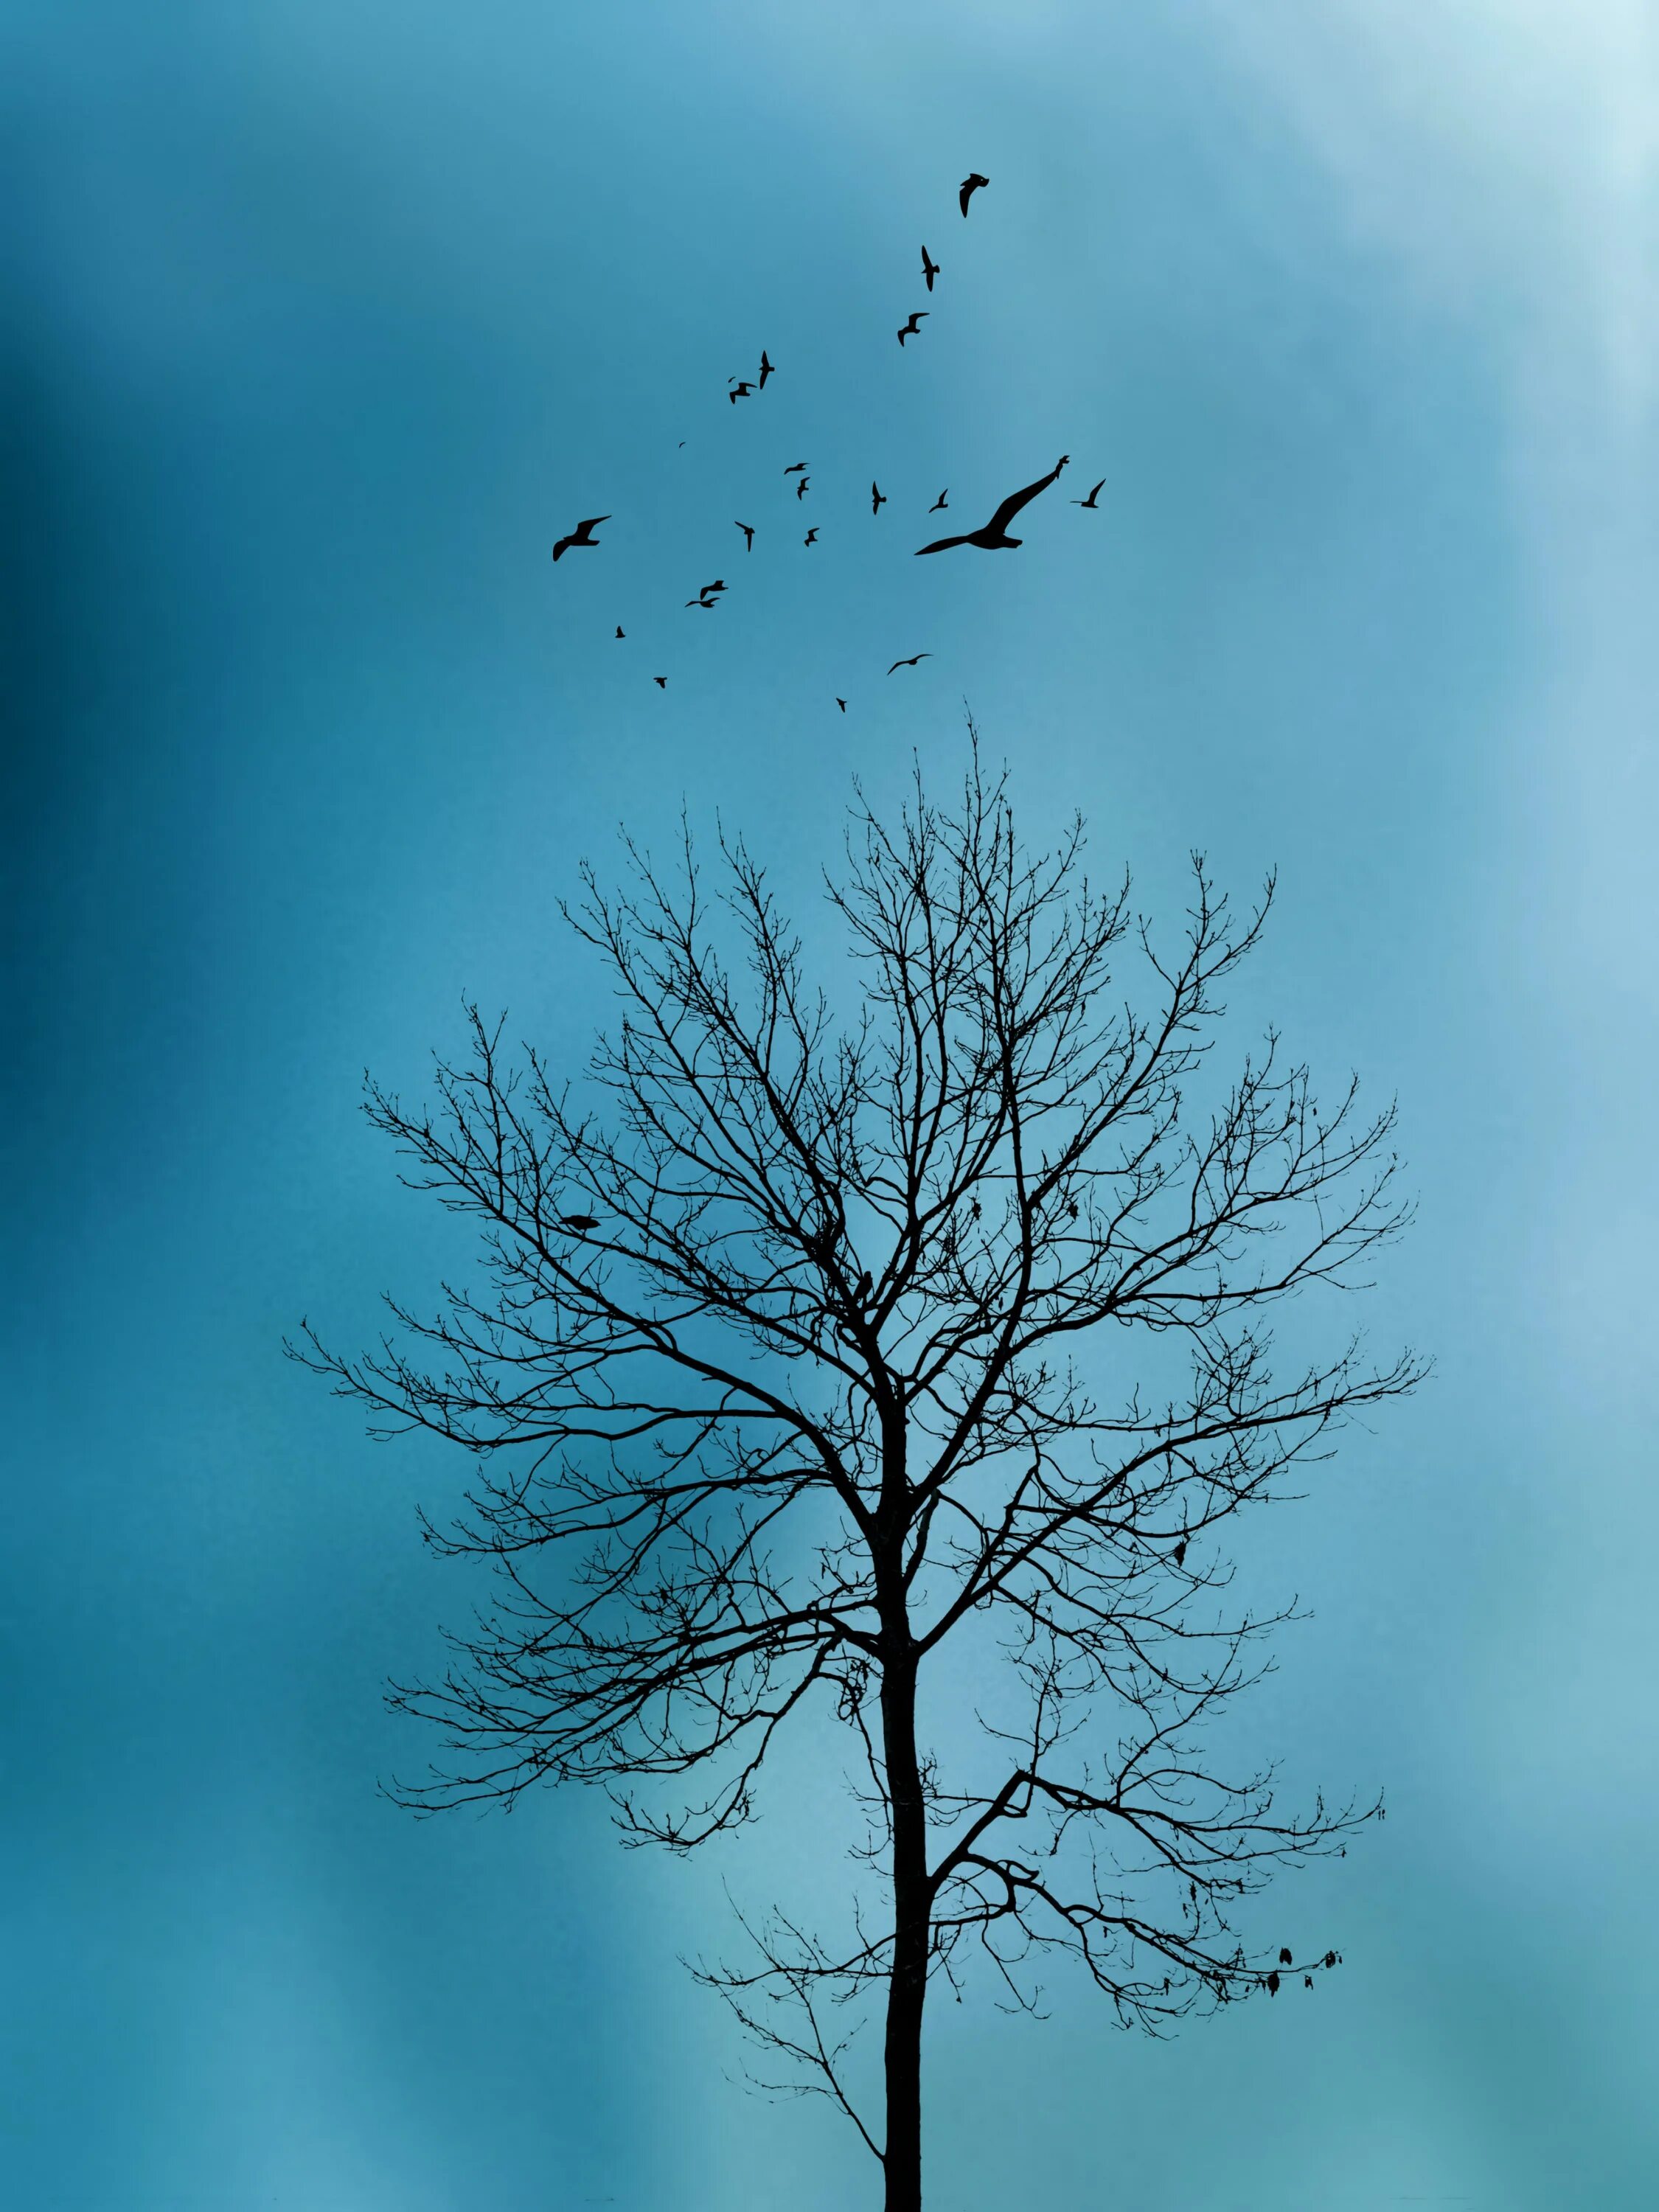 Птицы дерево начинающему. Птицы на дереве. Птицы в небе. Птица на дереве вдалеке. Небо и деревья.